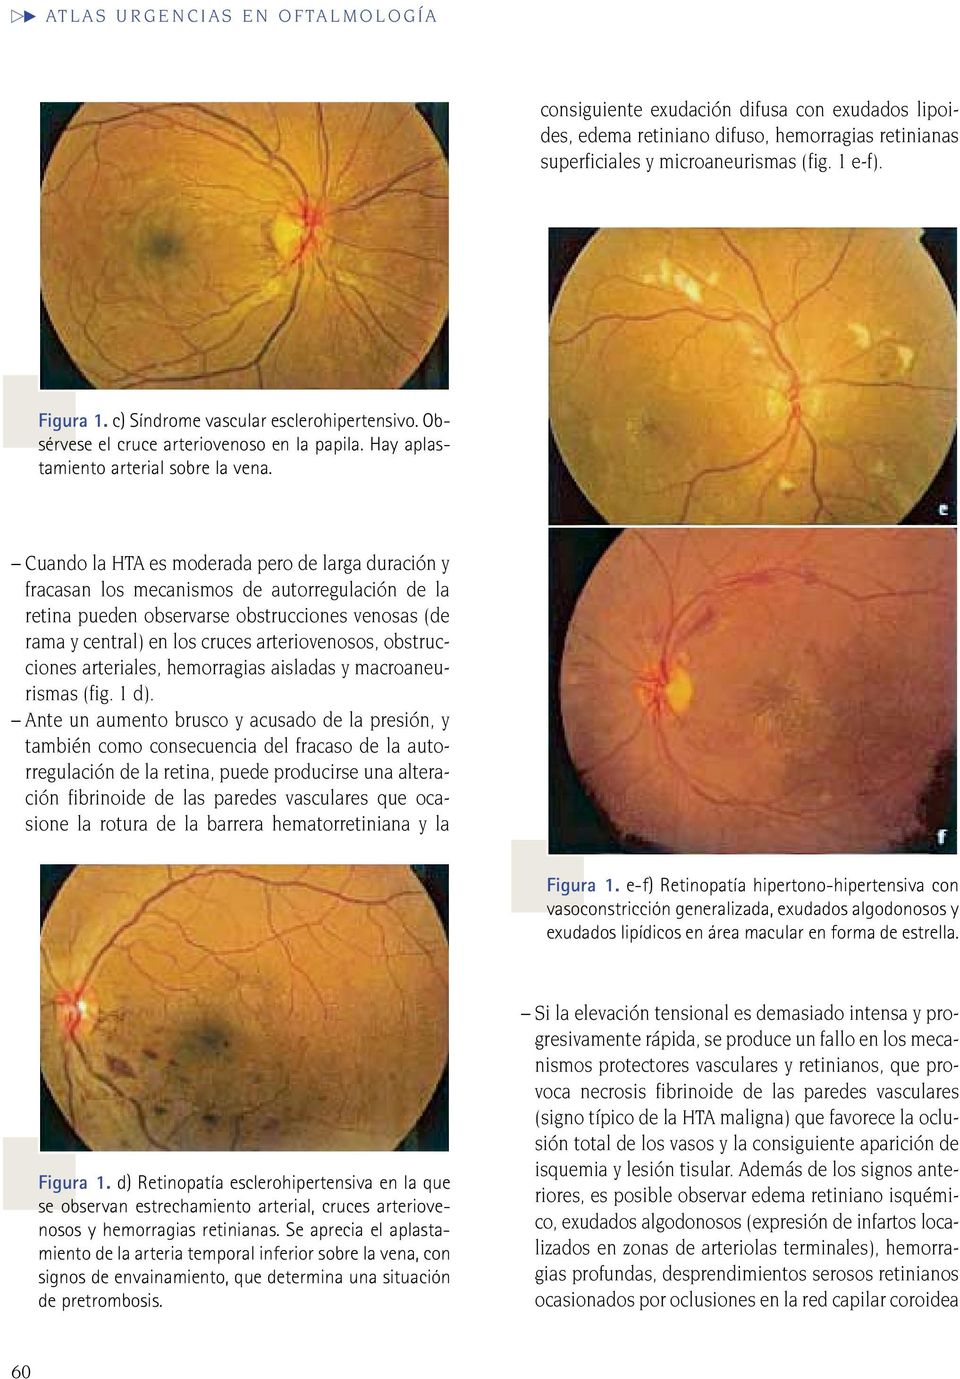 Cuando la HTA es moderada pero de larga duración y fracasan los mecanismos de autorregulación de la retina pueden observarse obstrucciones venosas (de rama y central) en los cruces arteriovenosos,